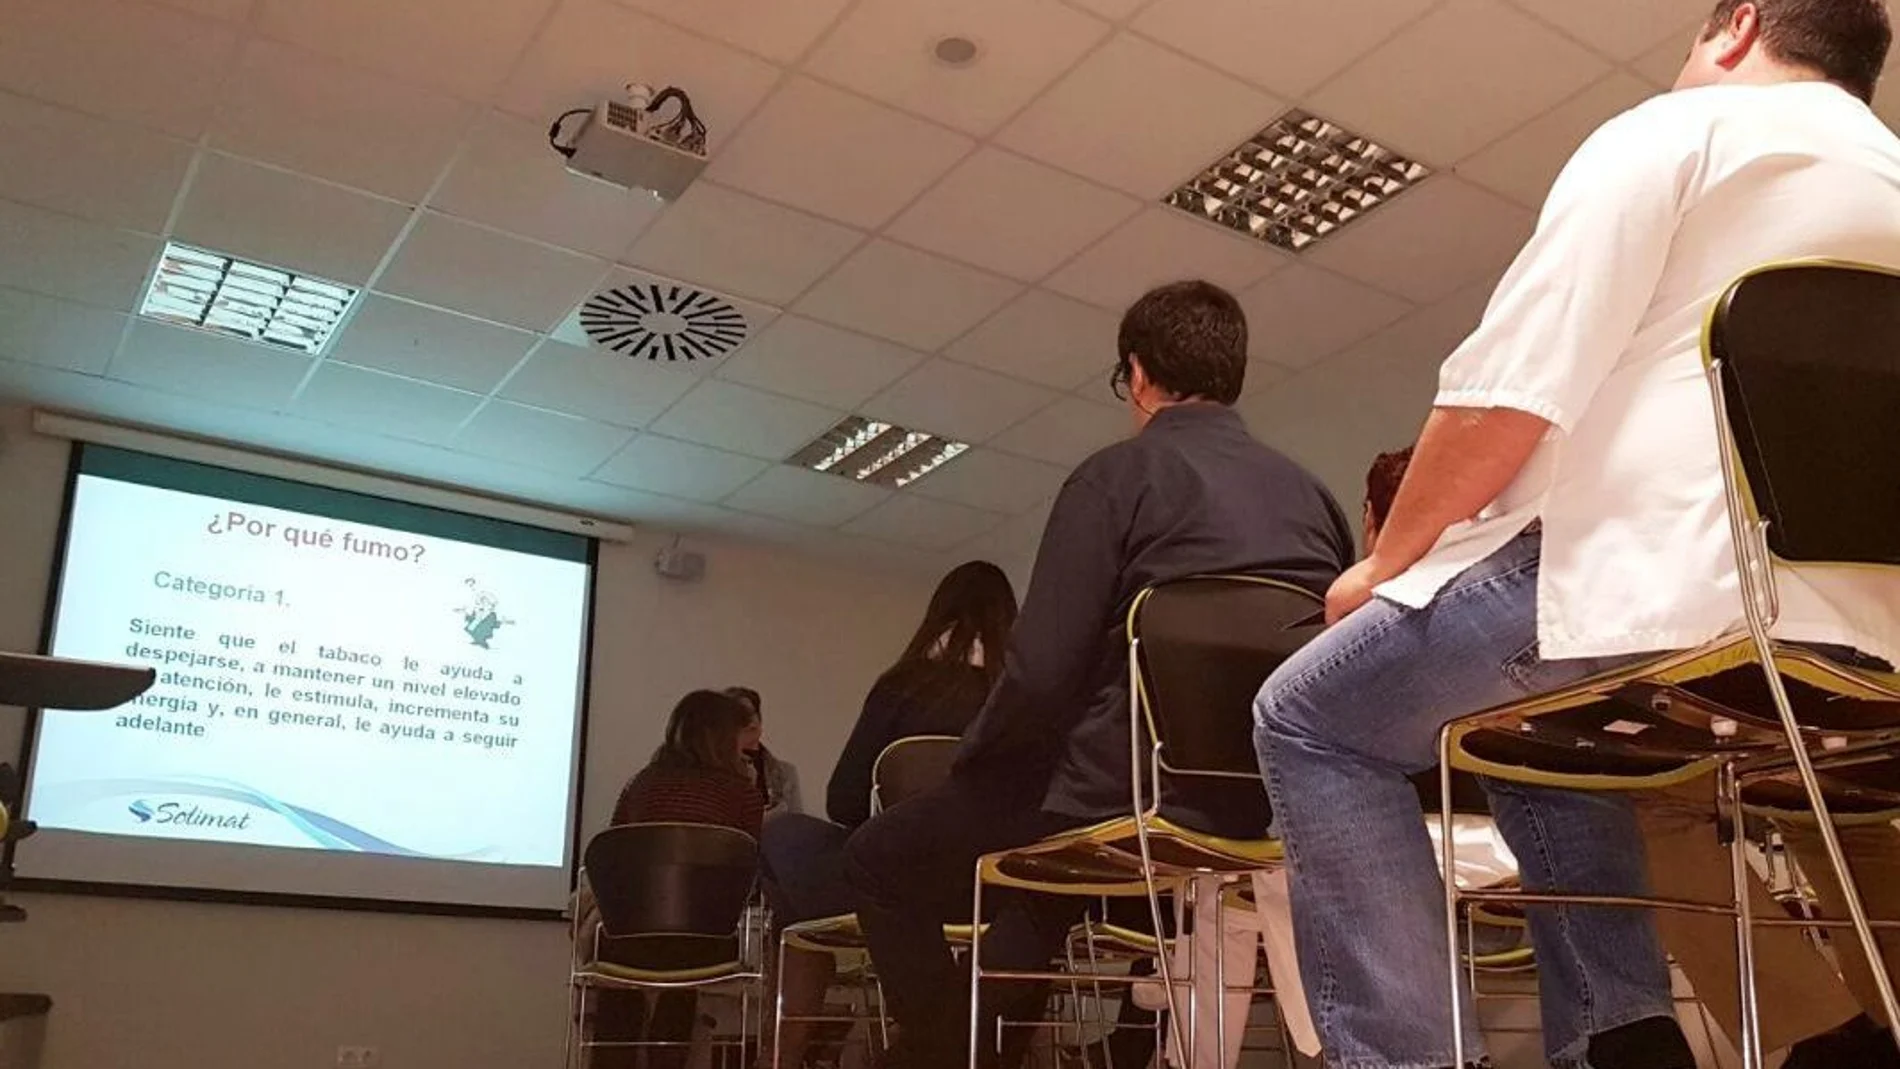 Este año participarán alrededor de cien personas en el programa de deshabituación tabáquica de la AECC en Valladolid